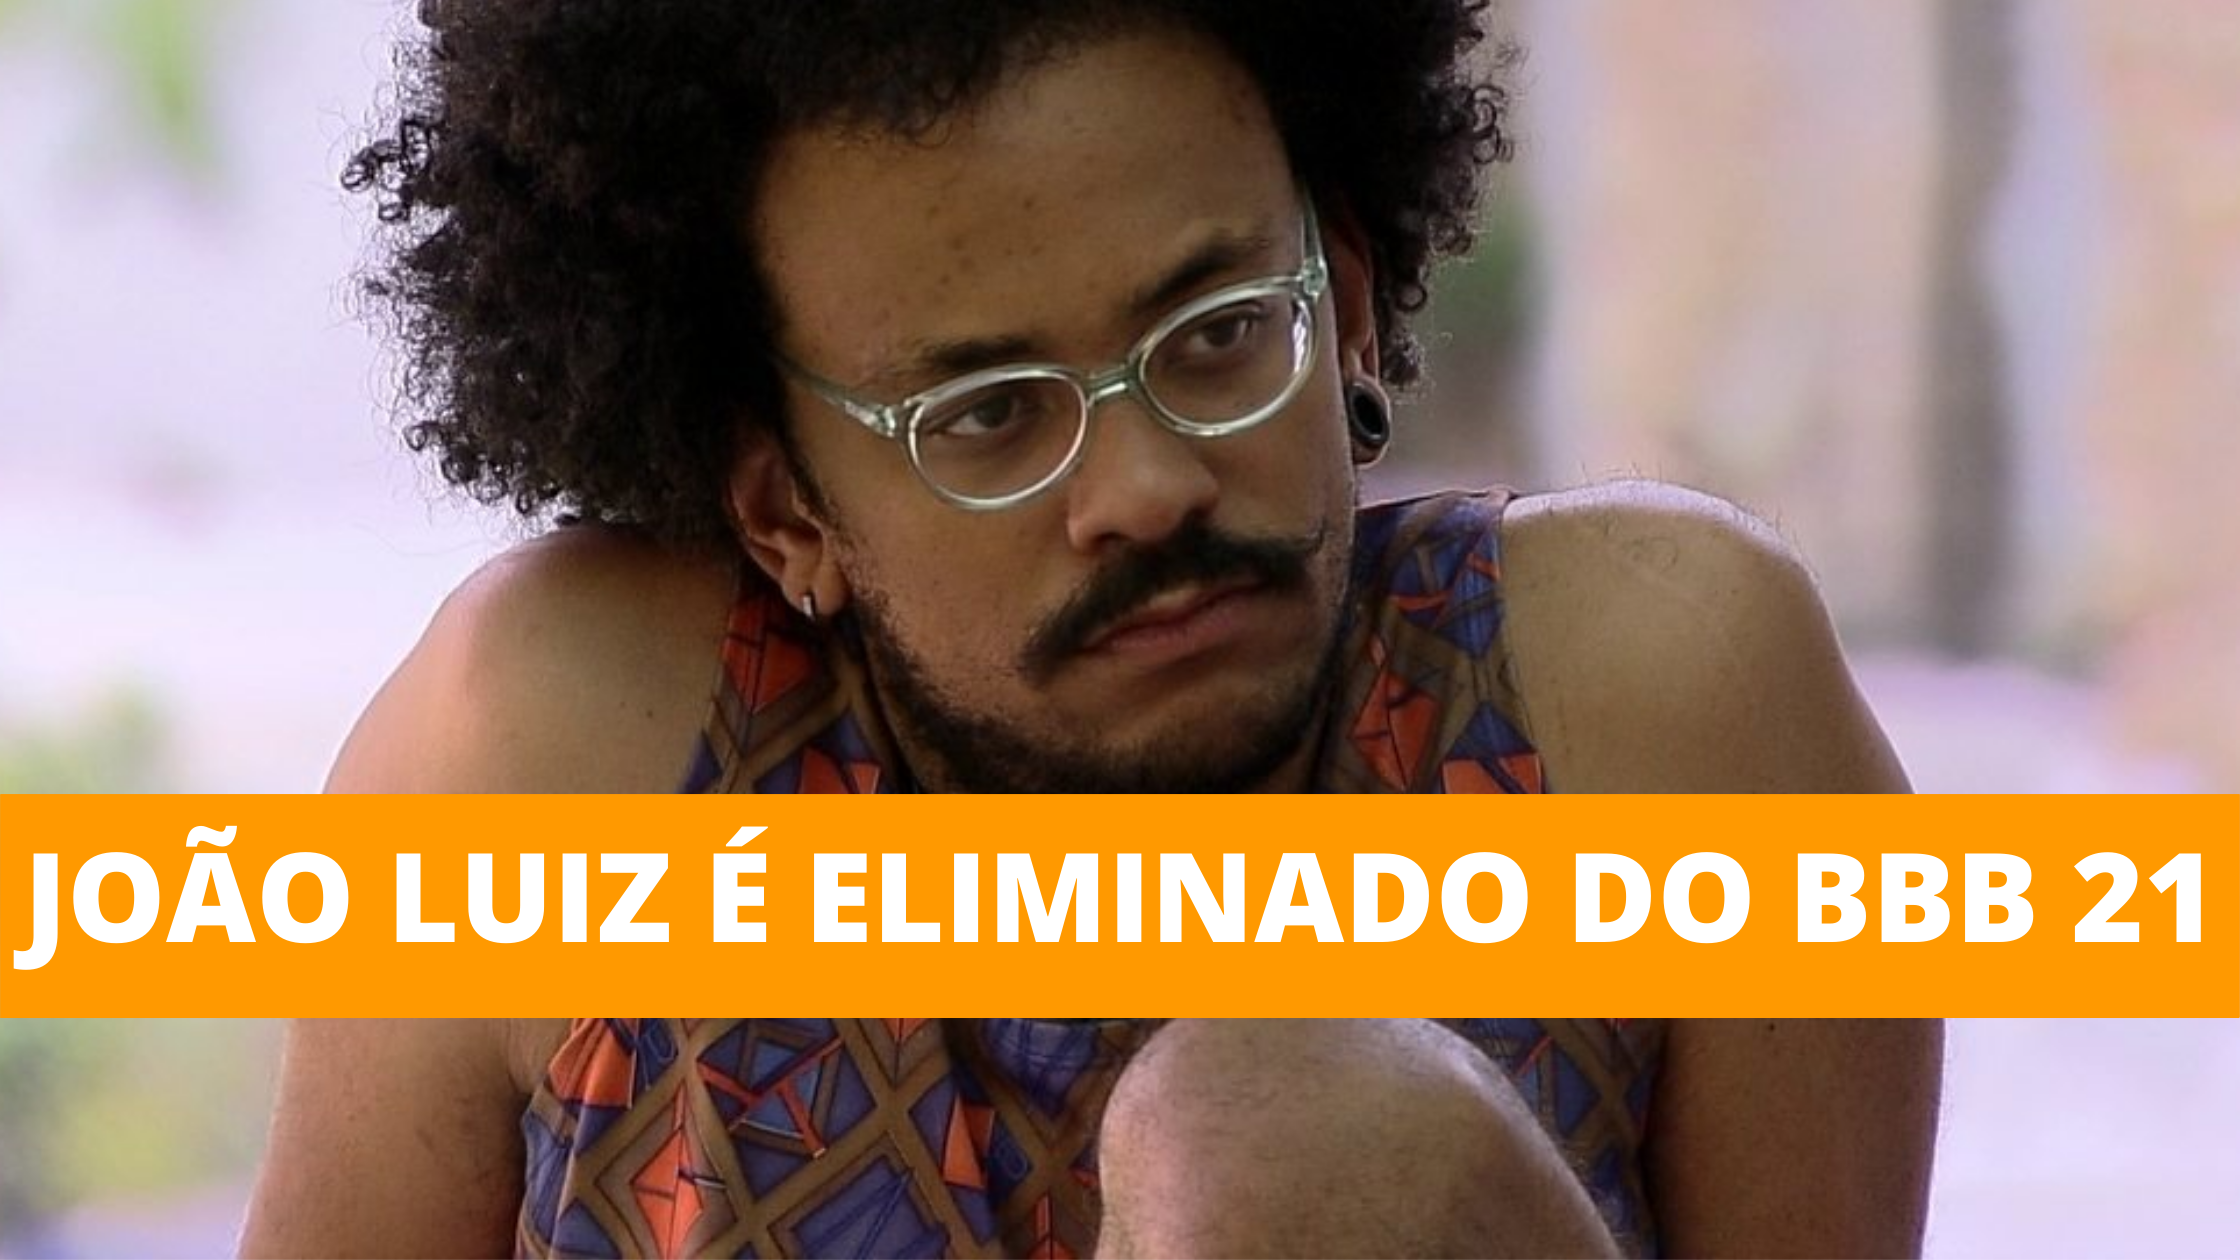 João Luiz é eliminado do BBB 21 com 58,86% dos votos